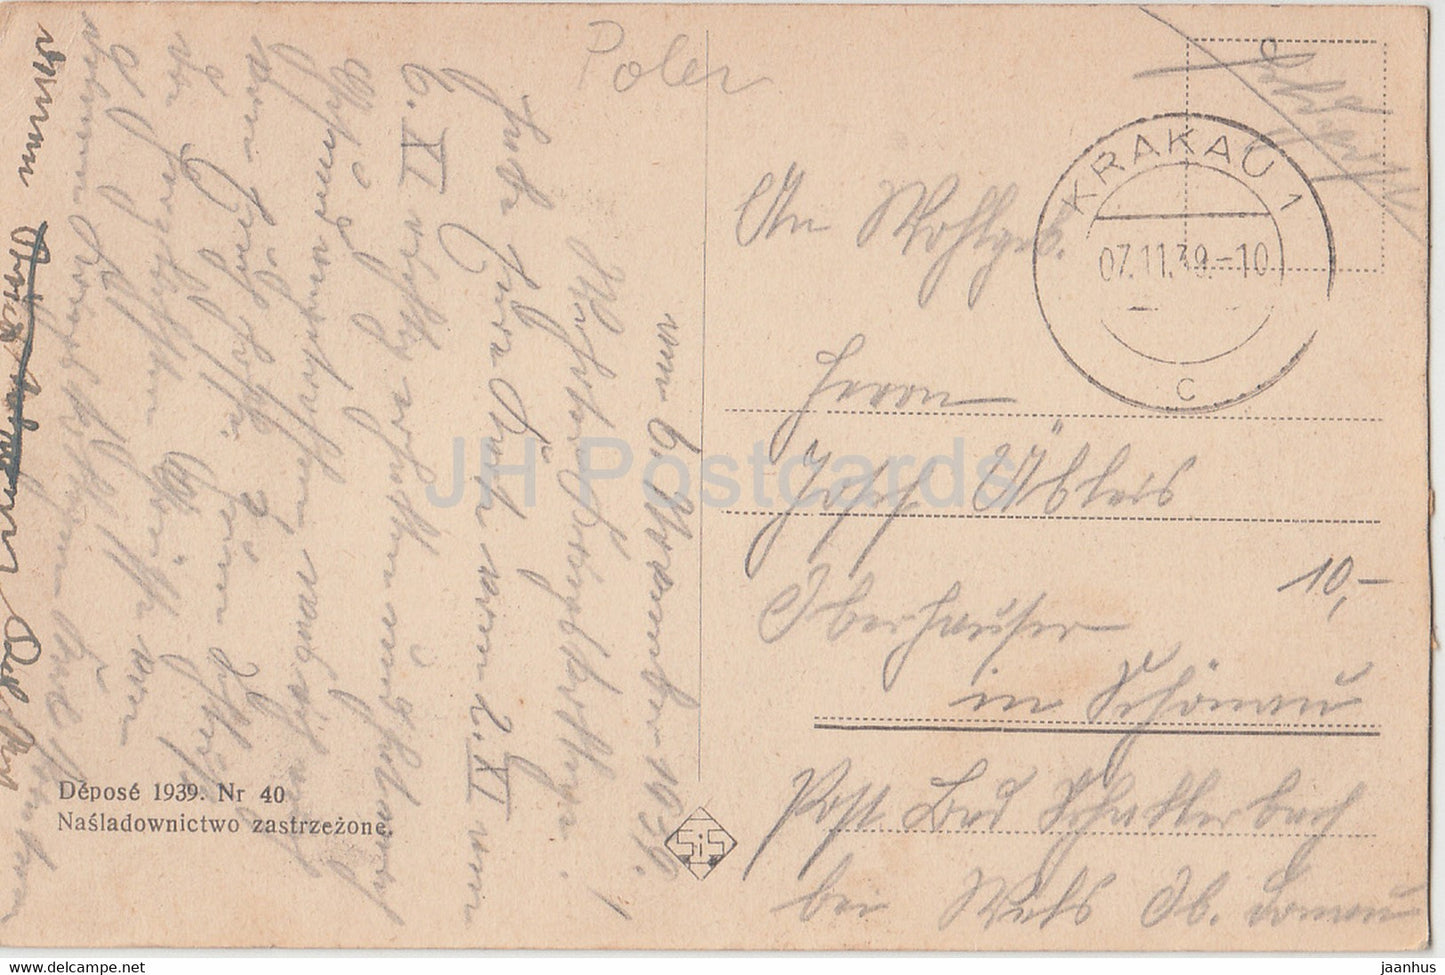 Krakau - Sukiennice - Tuchhaus - Feldpost - alte Postkarte - 1939 - Polen - gebraucht